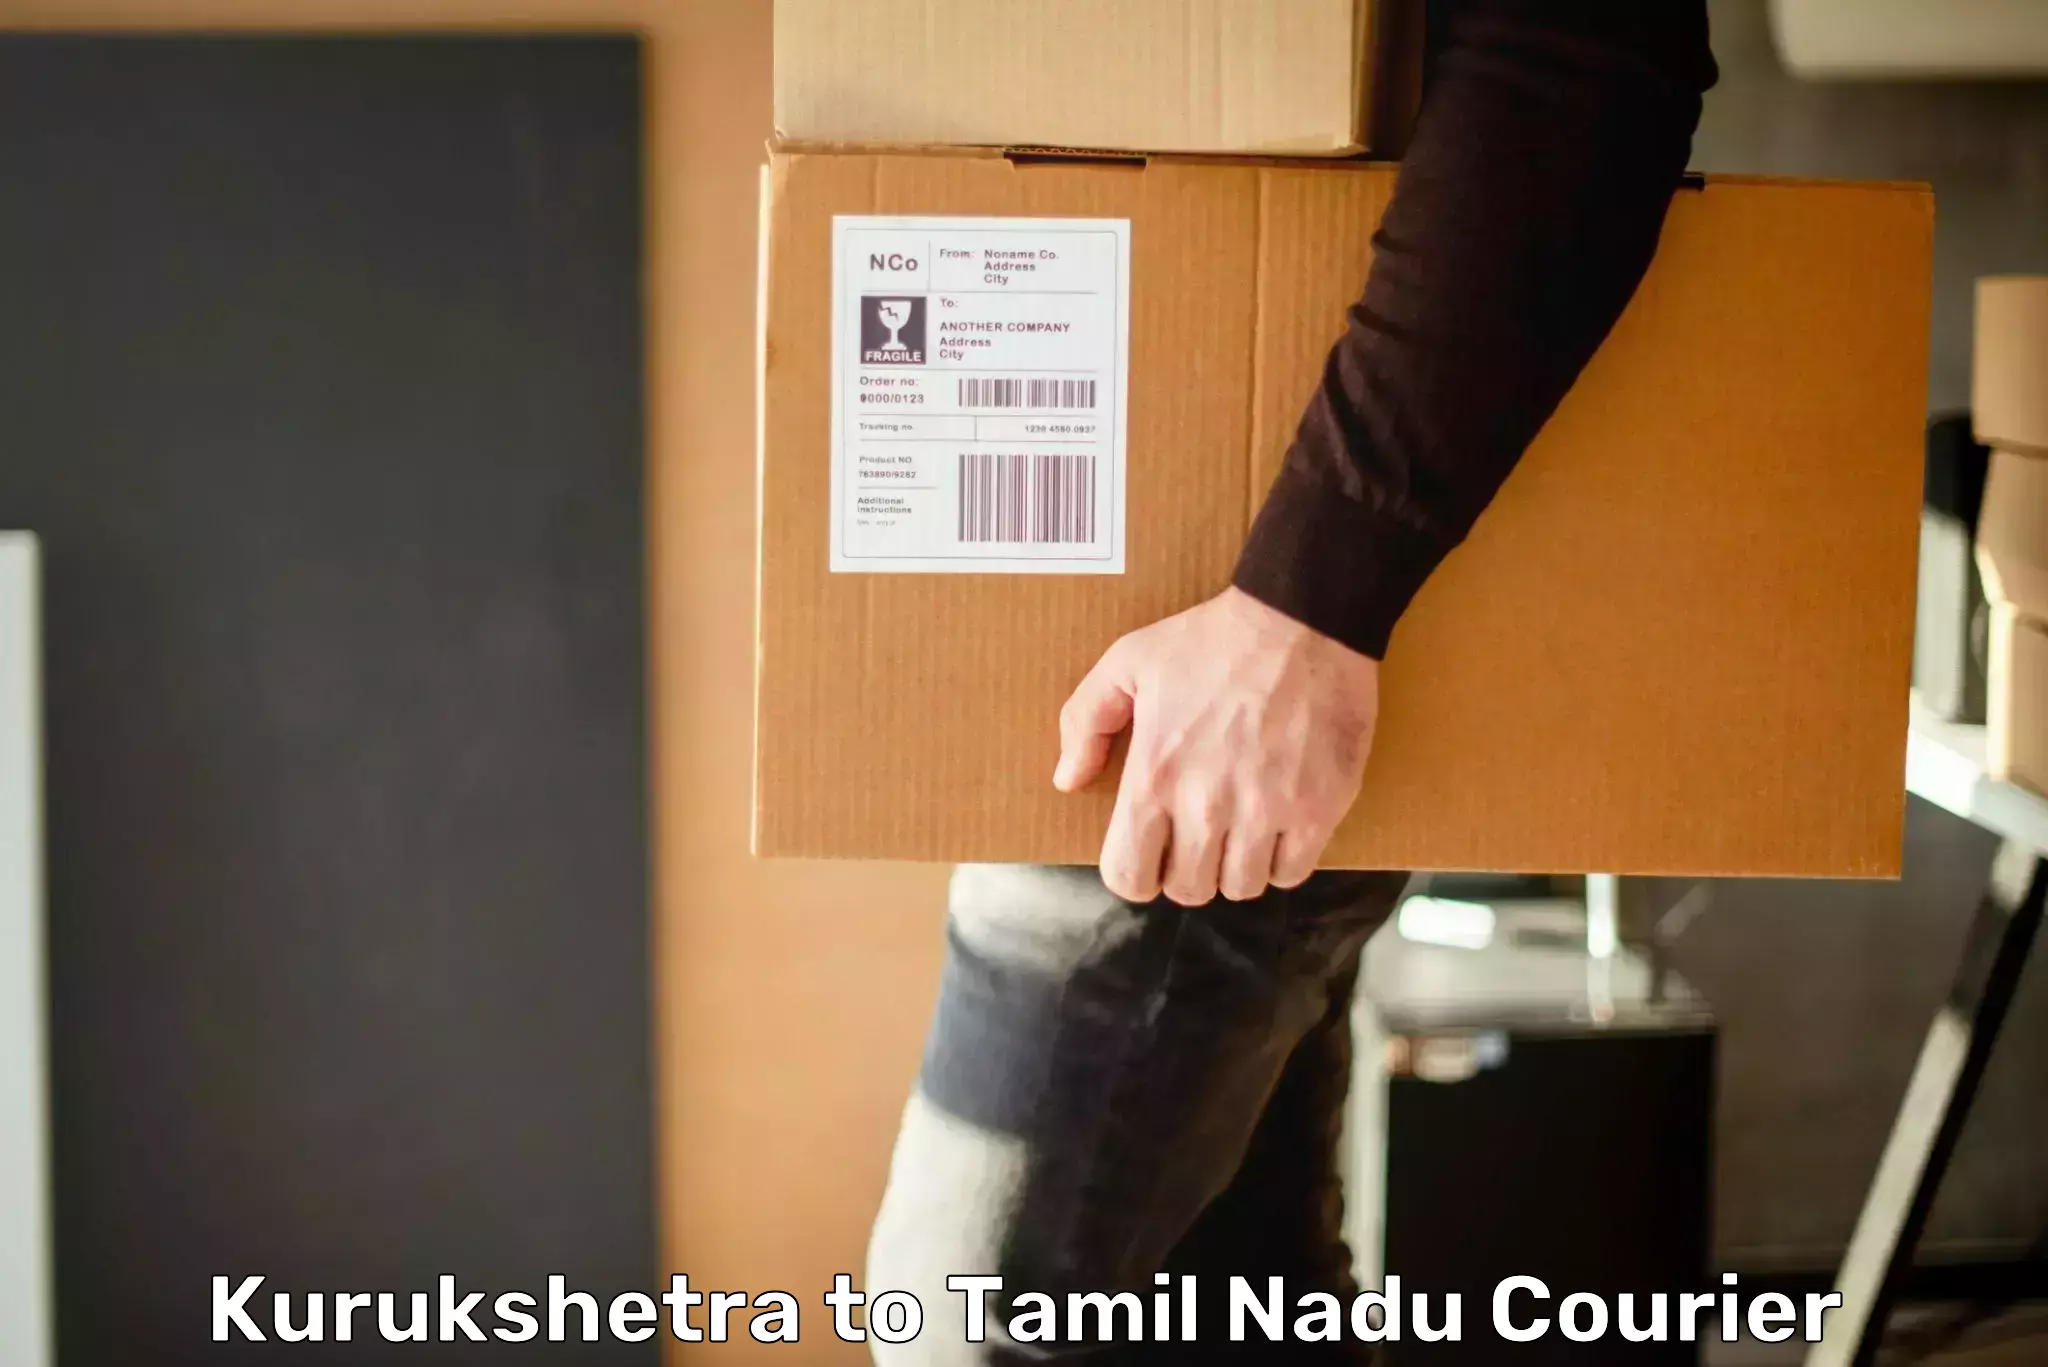 24/7 courier service Kurukshetra to Marthandam